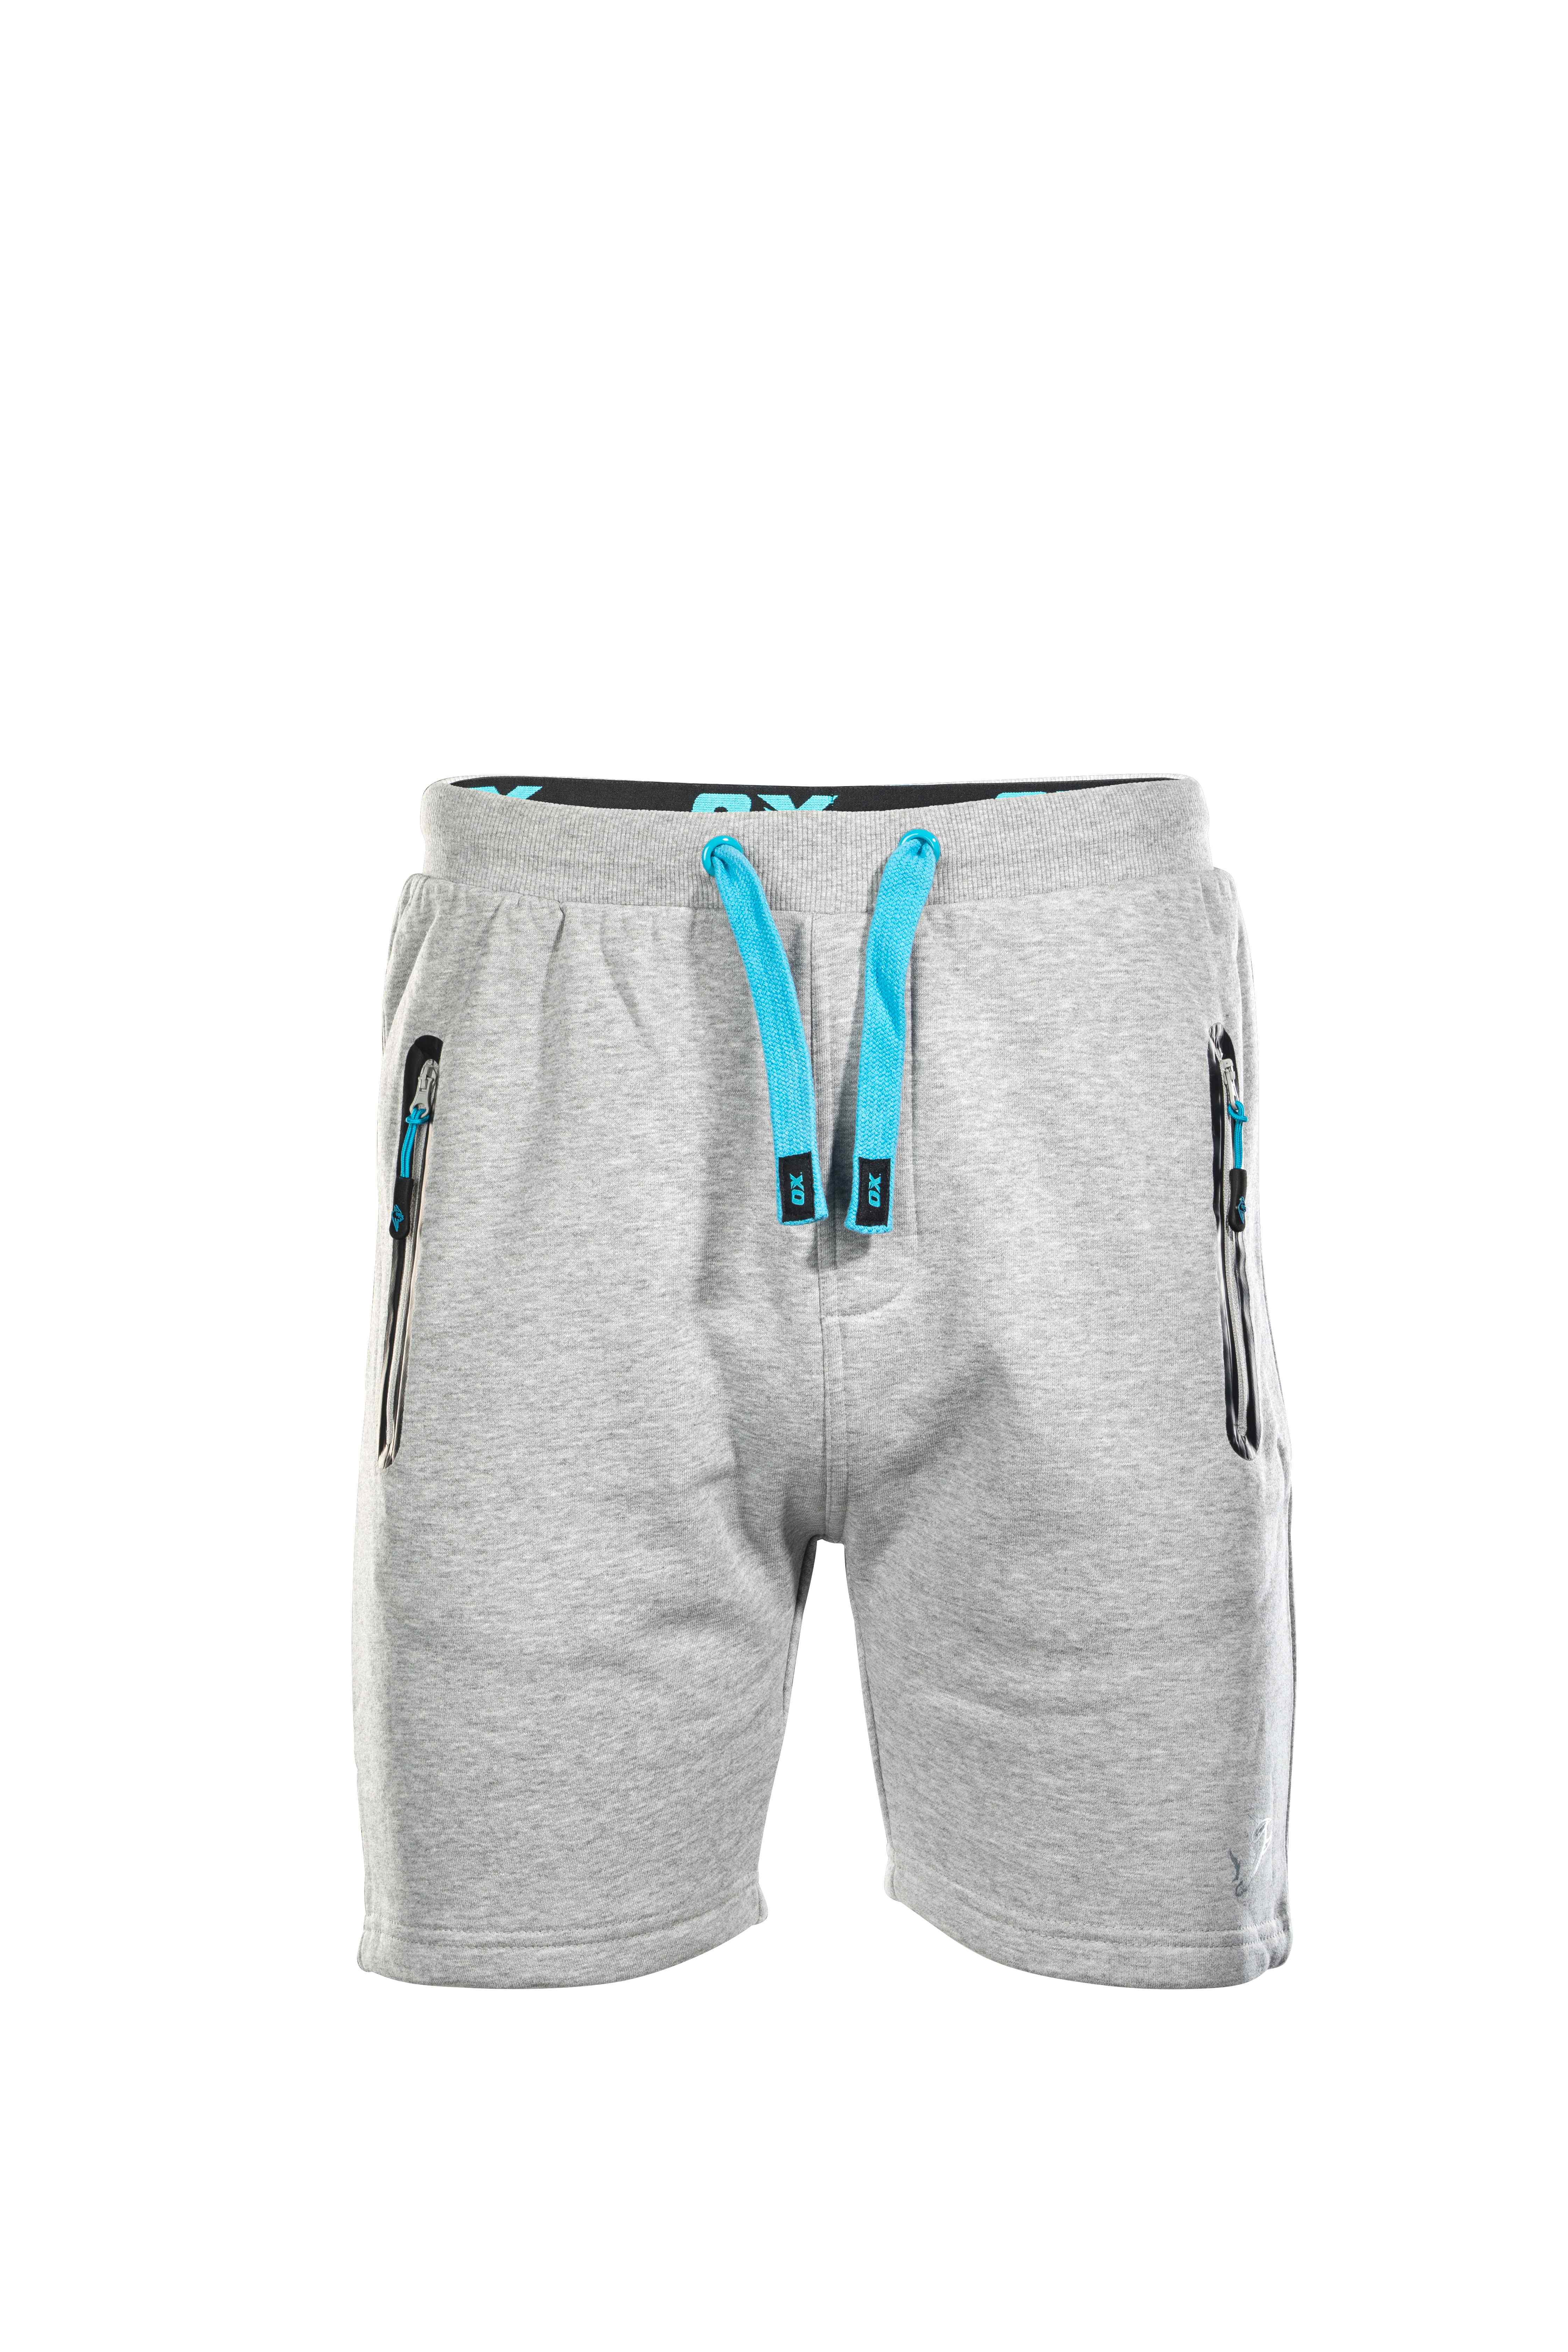 OX Jogger Shorts - Grey - 38